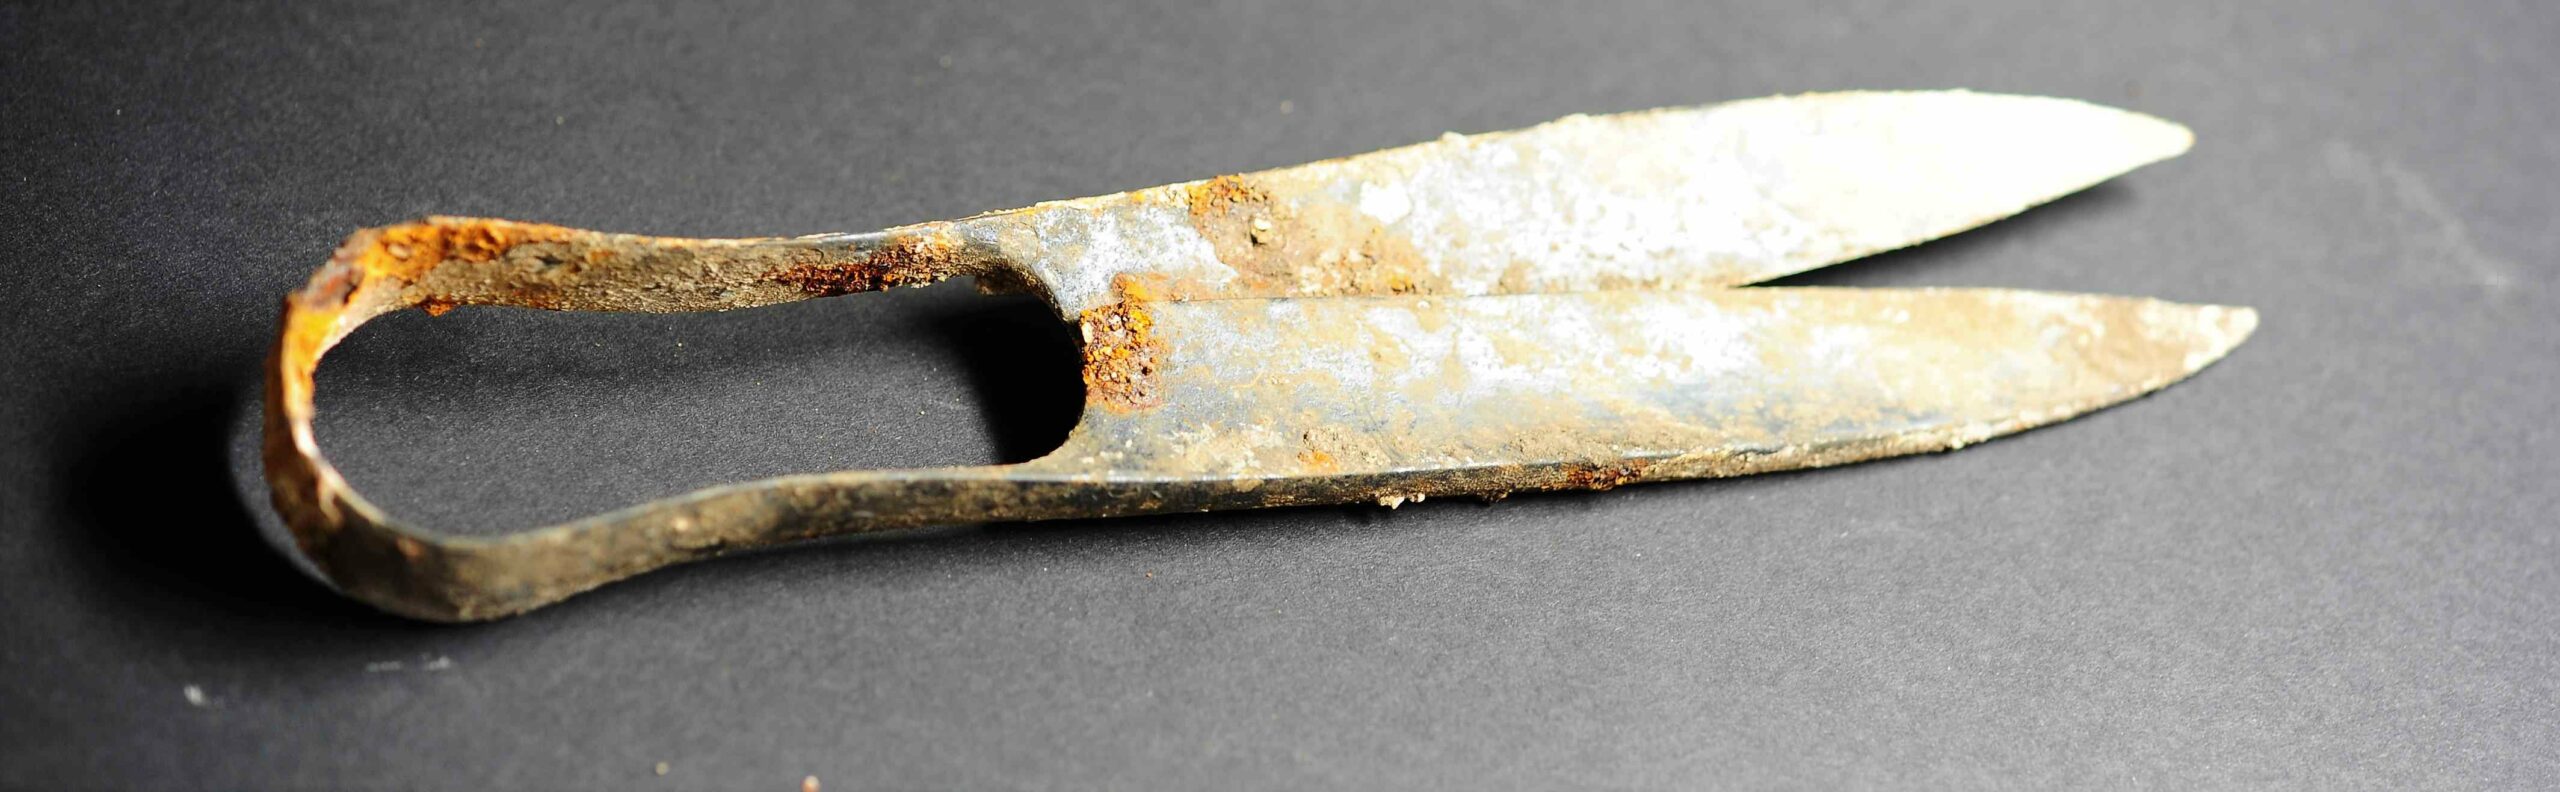 გერმანიაში კელტურ კრემაციის სამარხში 2,300 წლის მაკრატელი და "დაკეცილი" ხმალი აღმოაჩინეს 2